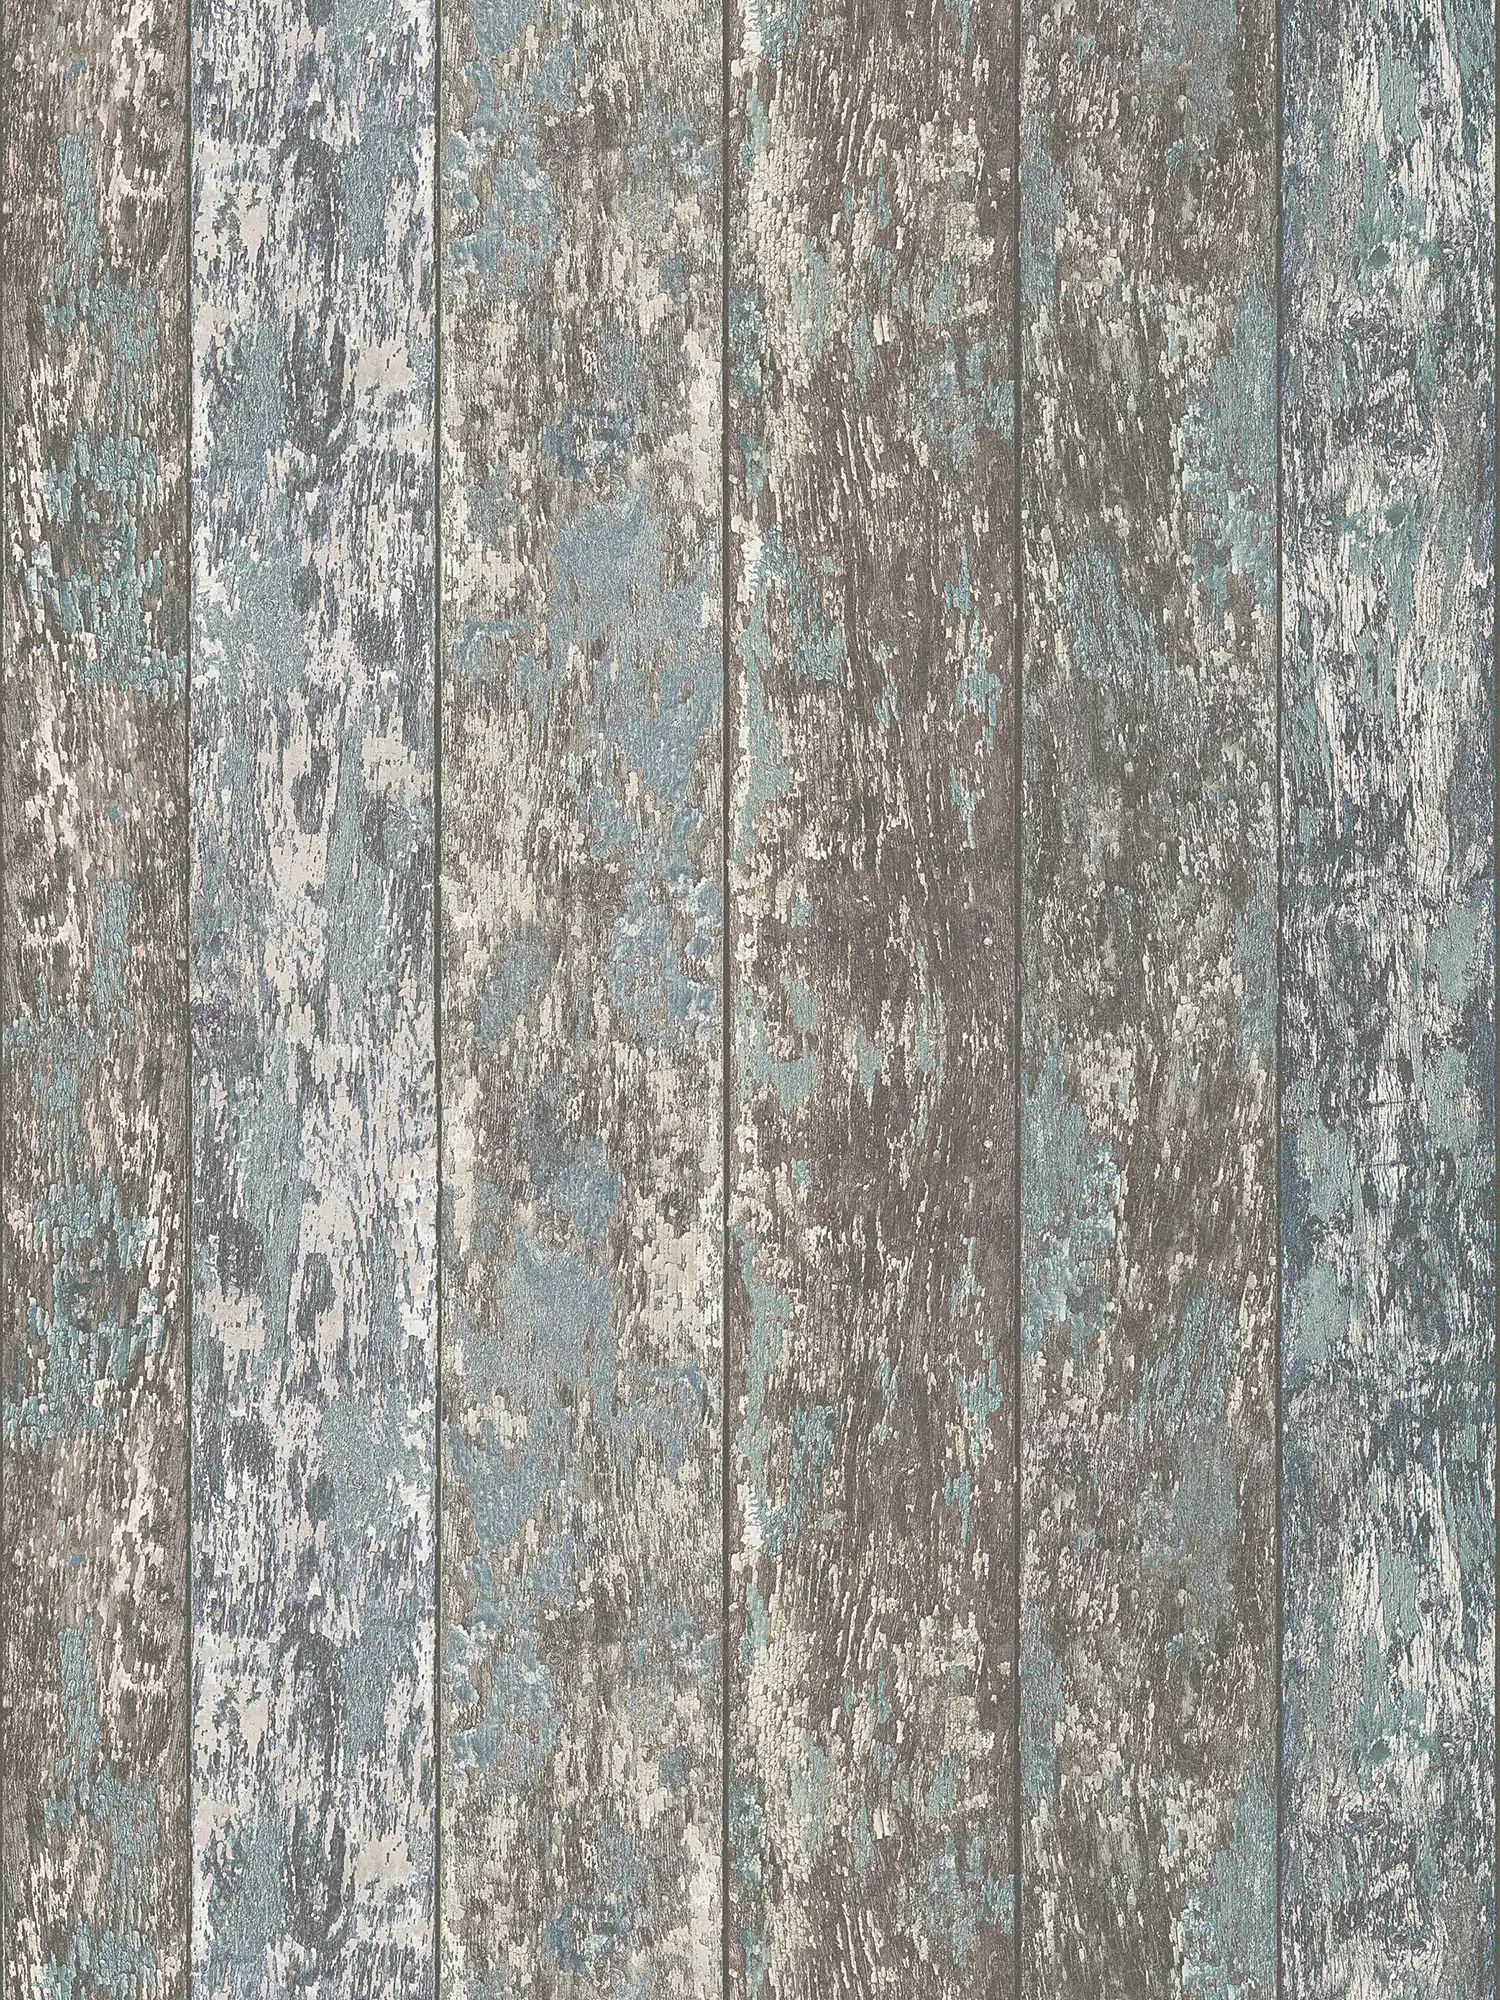 Vliesbehang met houteffect in shabby chic used look - blauw, bruin, grijs
